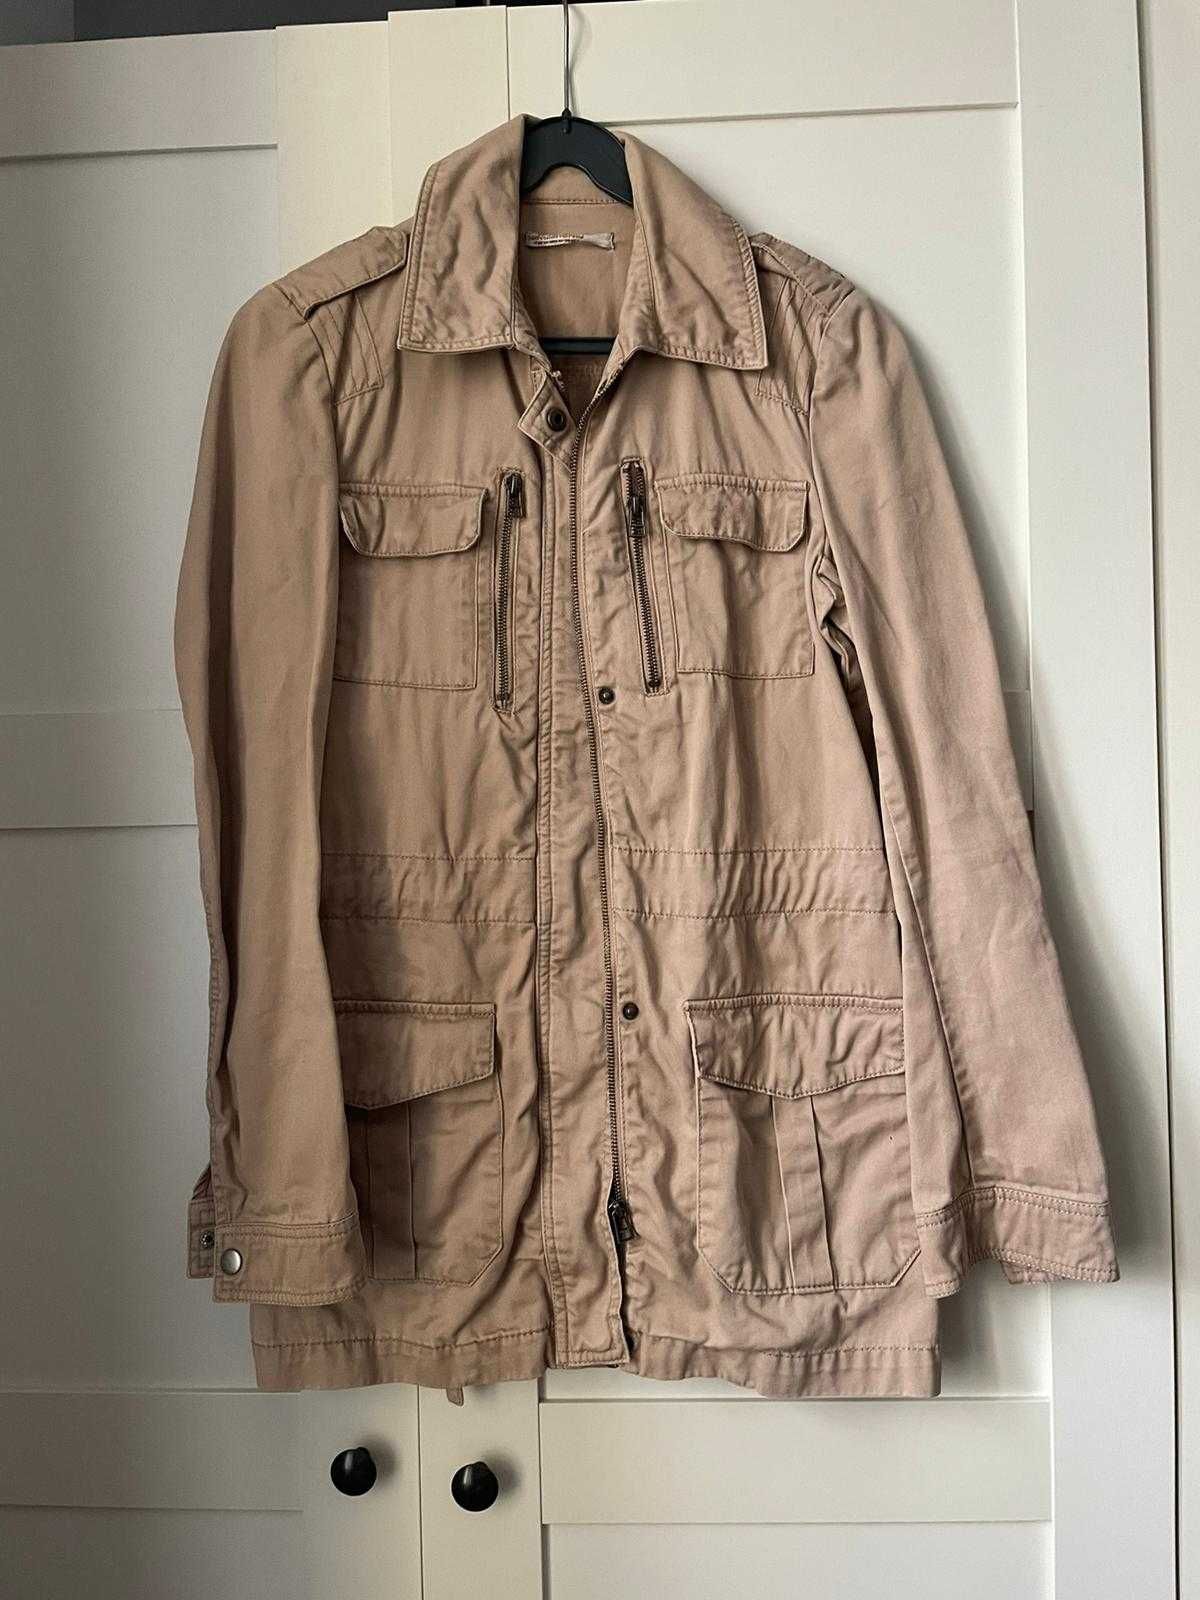 Wiosenna dłuższa kurtka/płaszczyk w stylu lekko militarnym